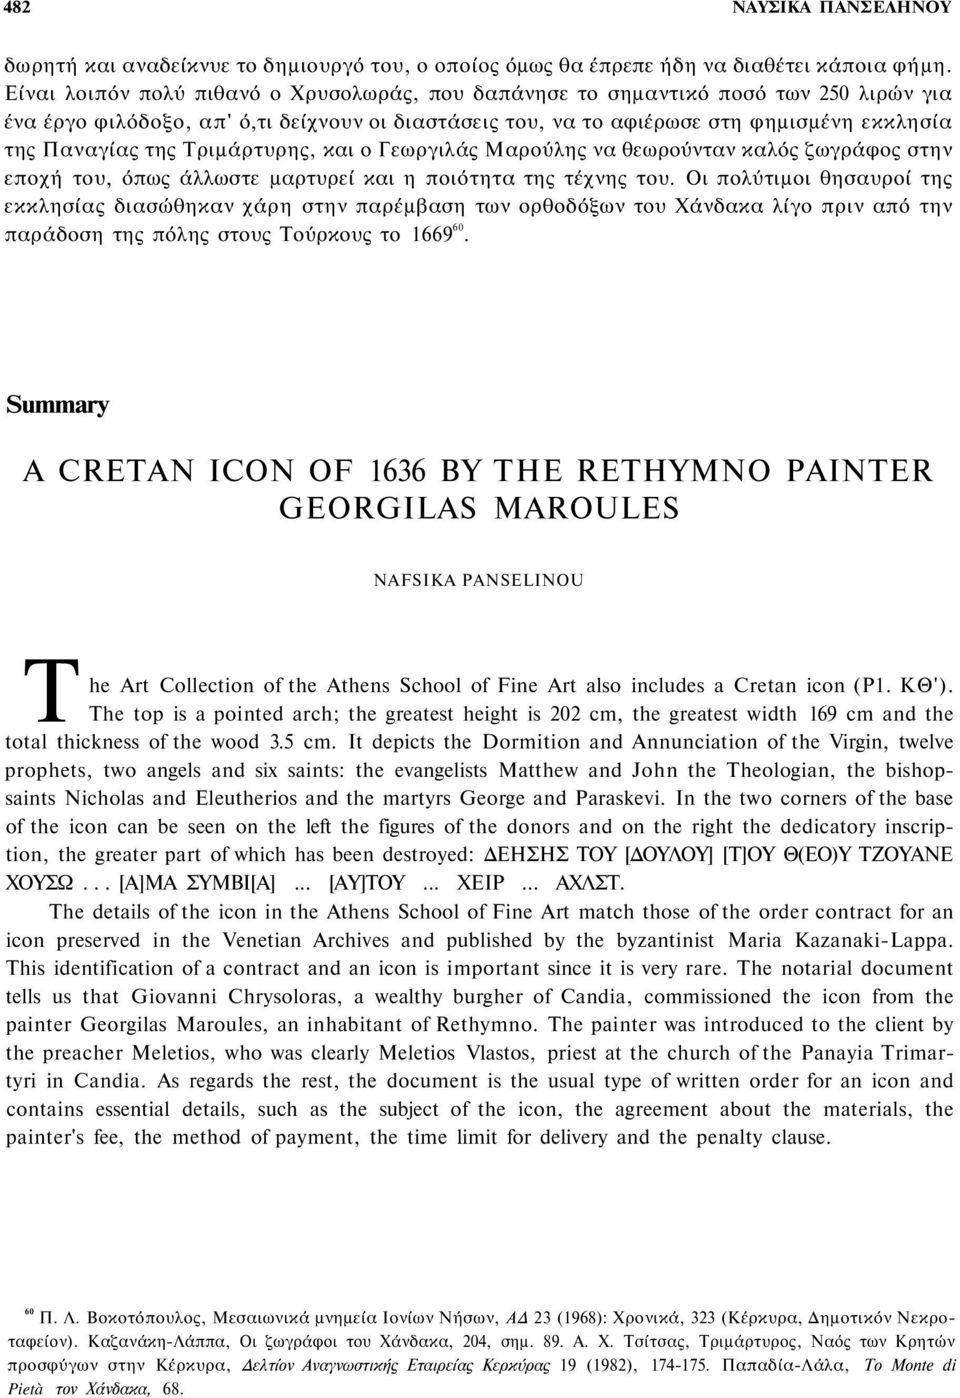 Τριμάρτυρης, και ο Γεωργιλάς Μαρούλης να θεωρούνταν καλός ζωγράφος στην εποχή του, όπως άλλωστε μαρτυρεί και η ποιότητα της τέχνης του.